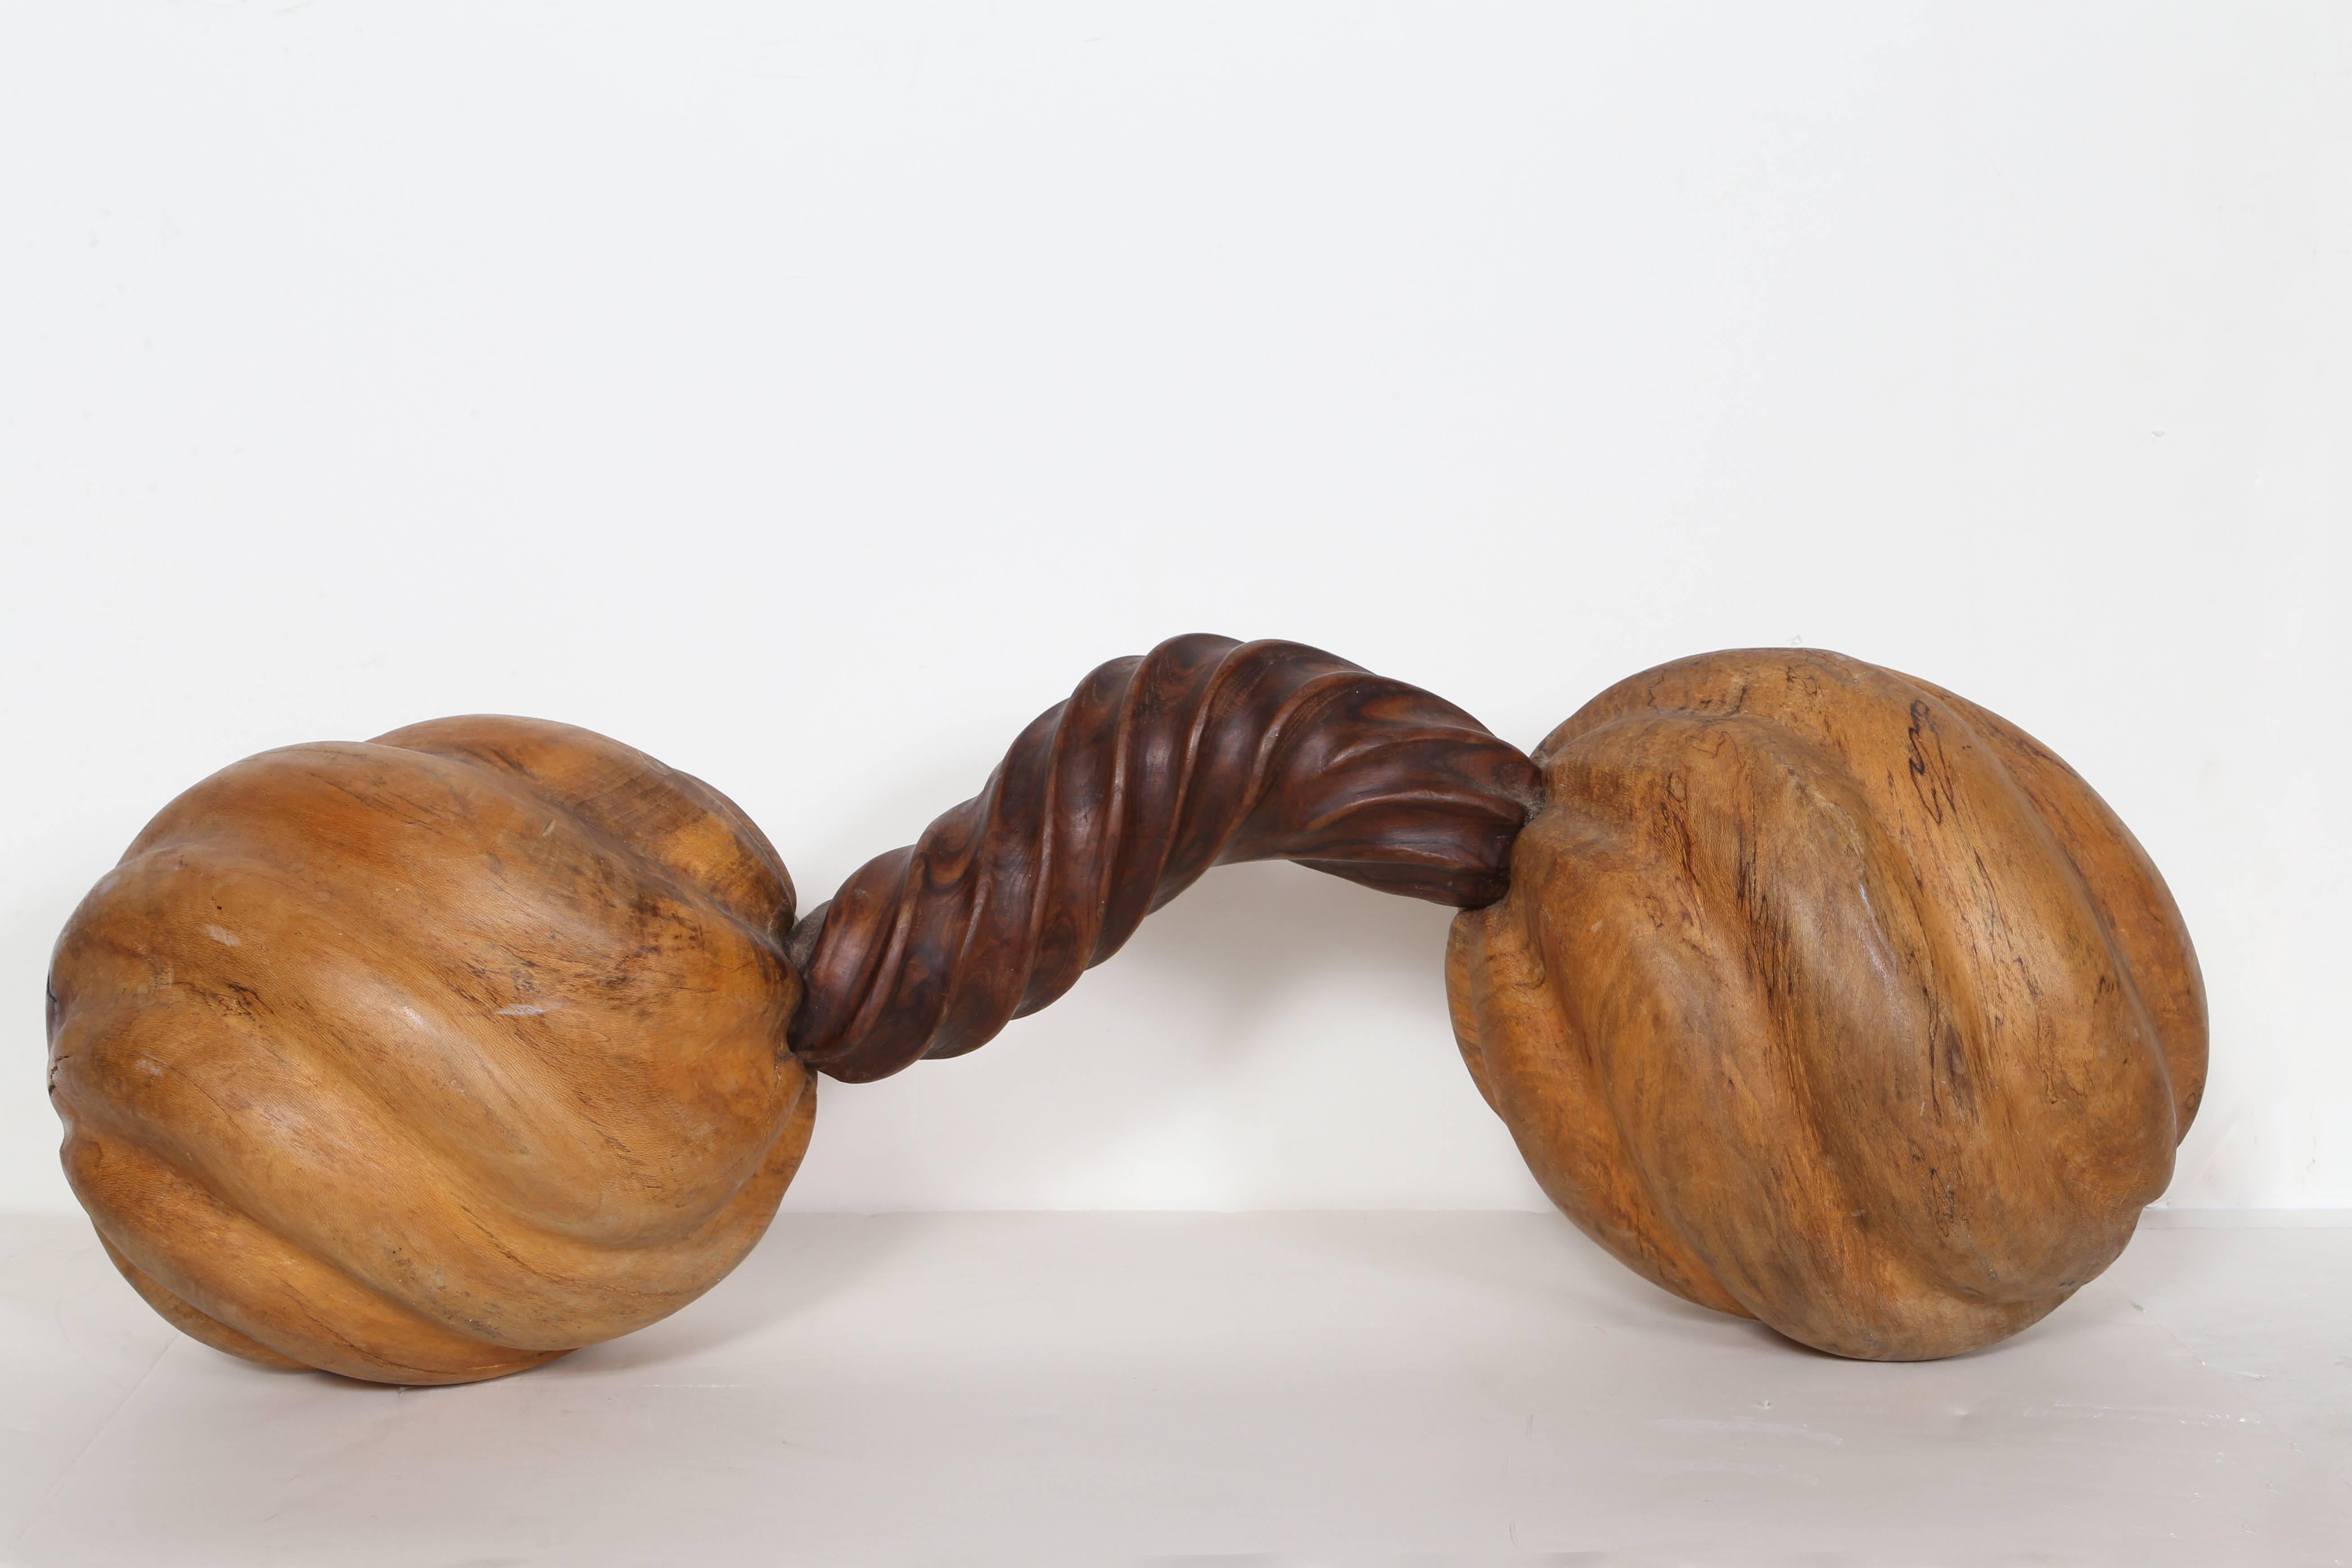 Unique wooden sculpture by Chris Berti